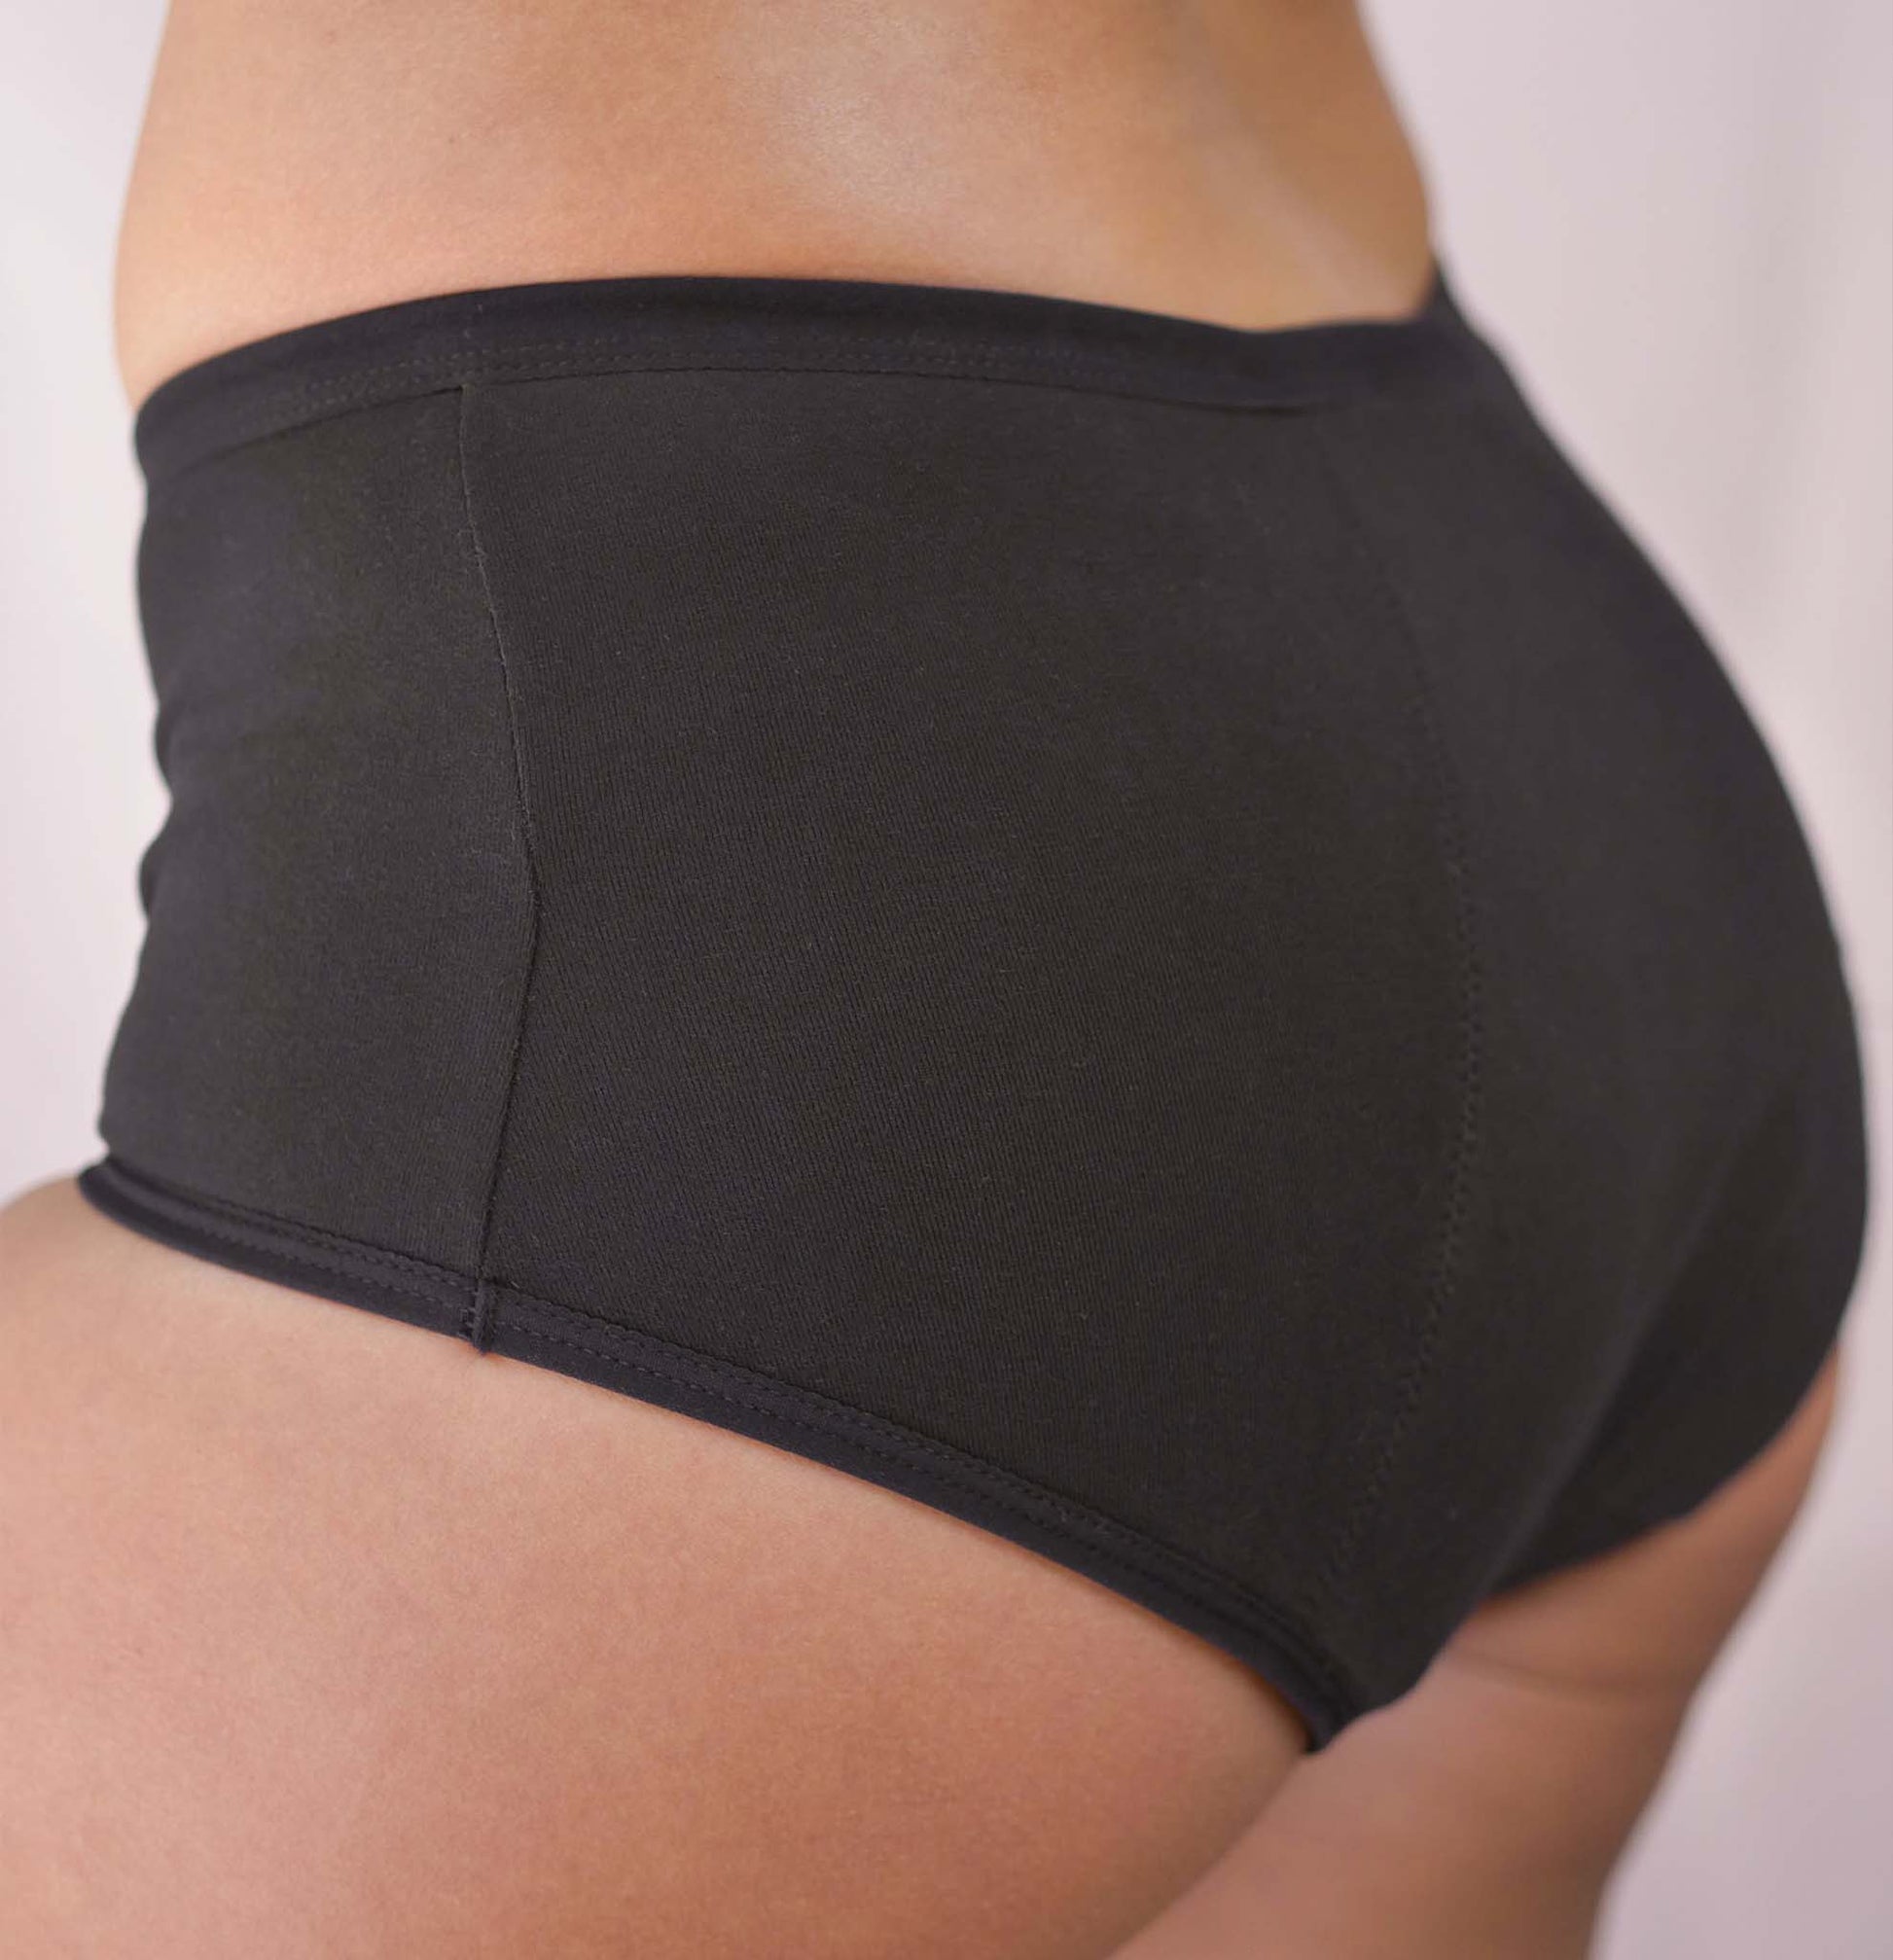 Heavy Flow Period Underwear – MyNickerBot